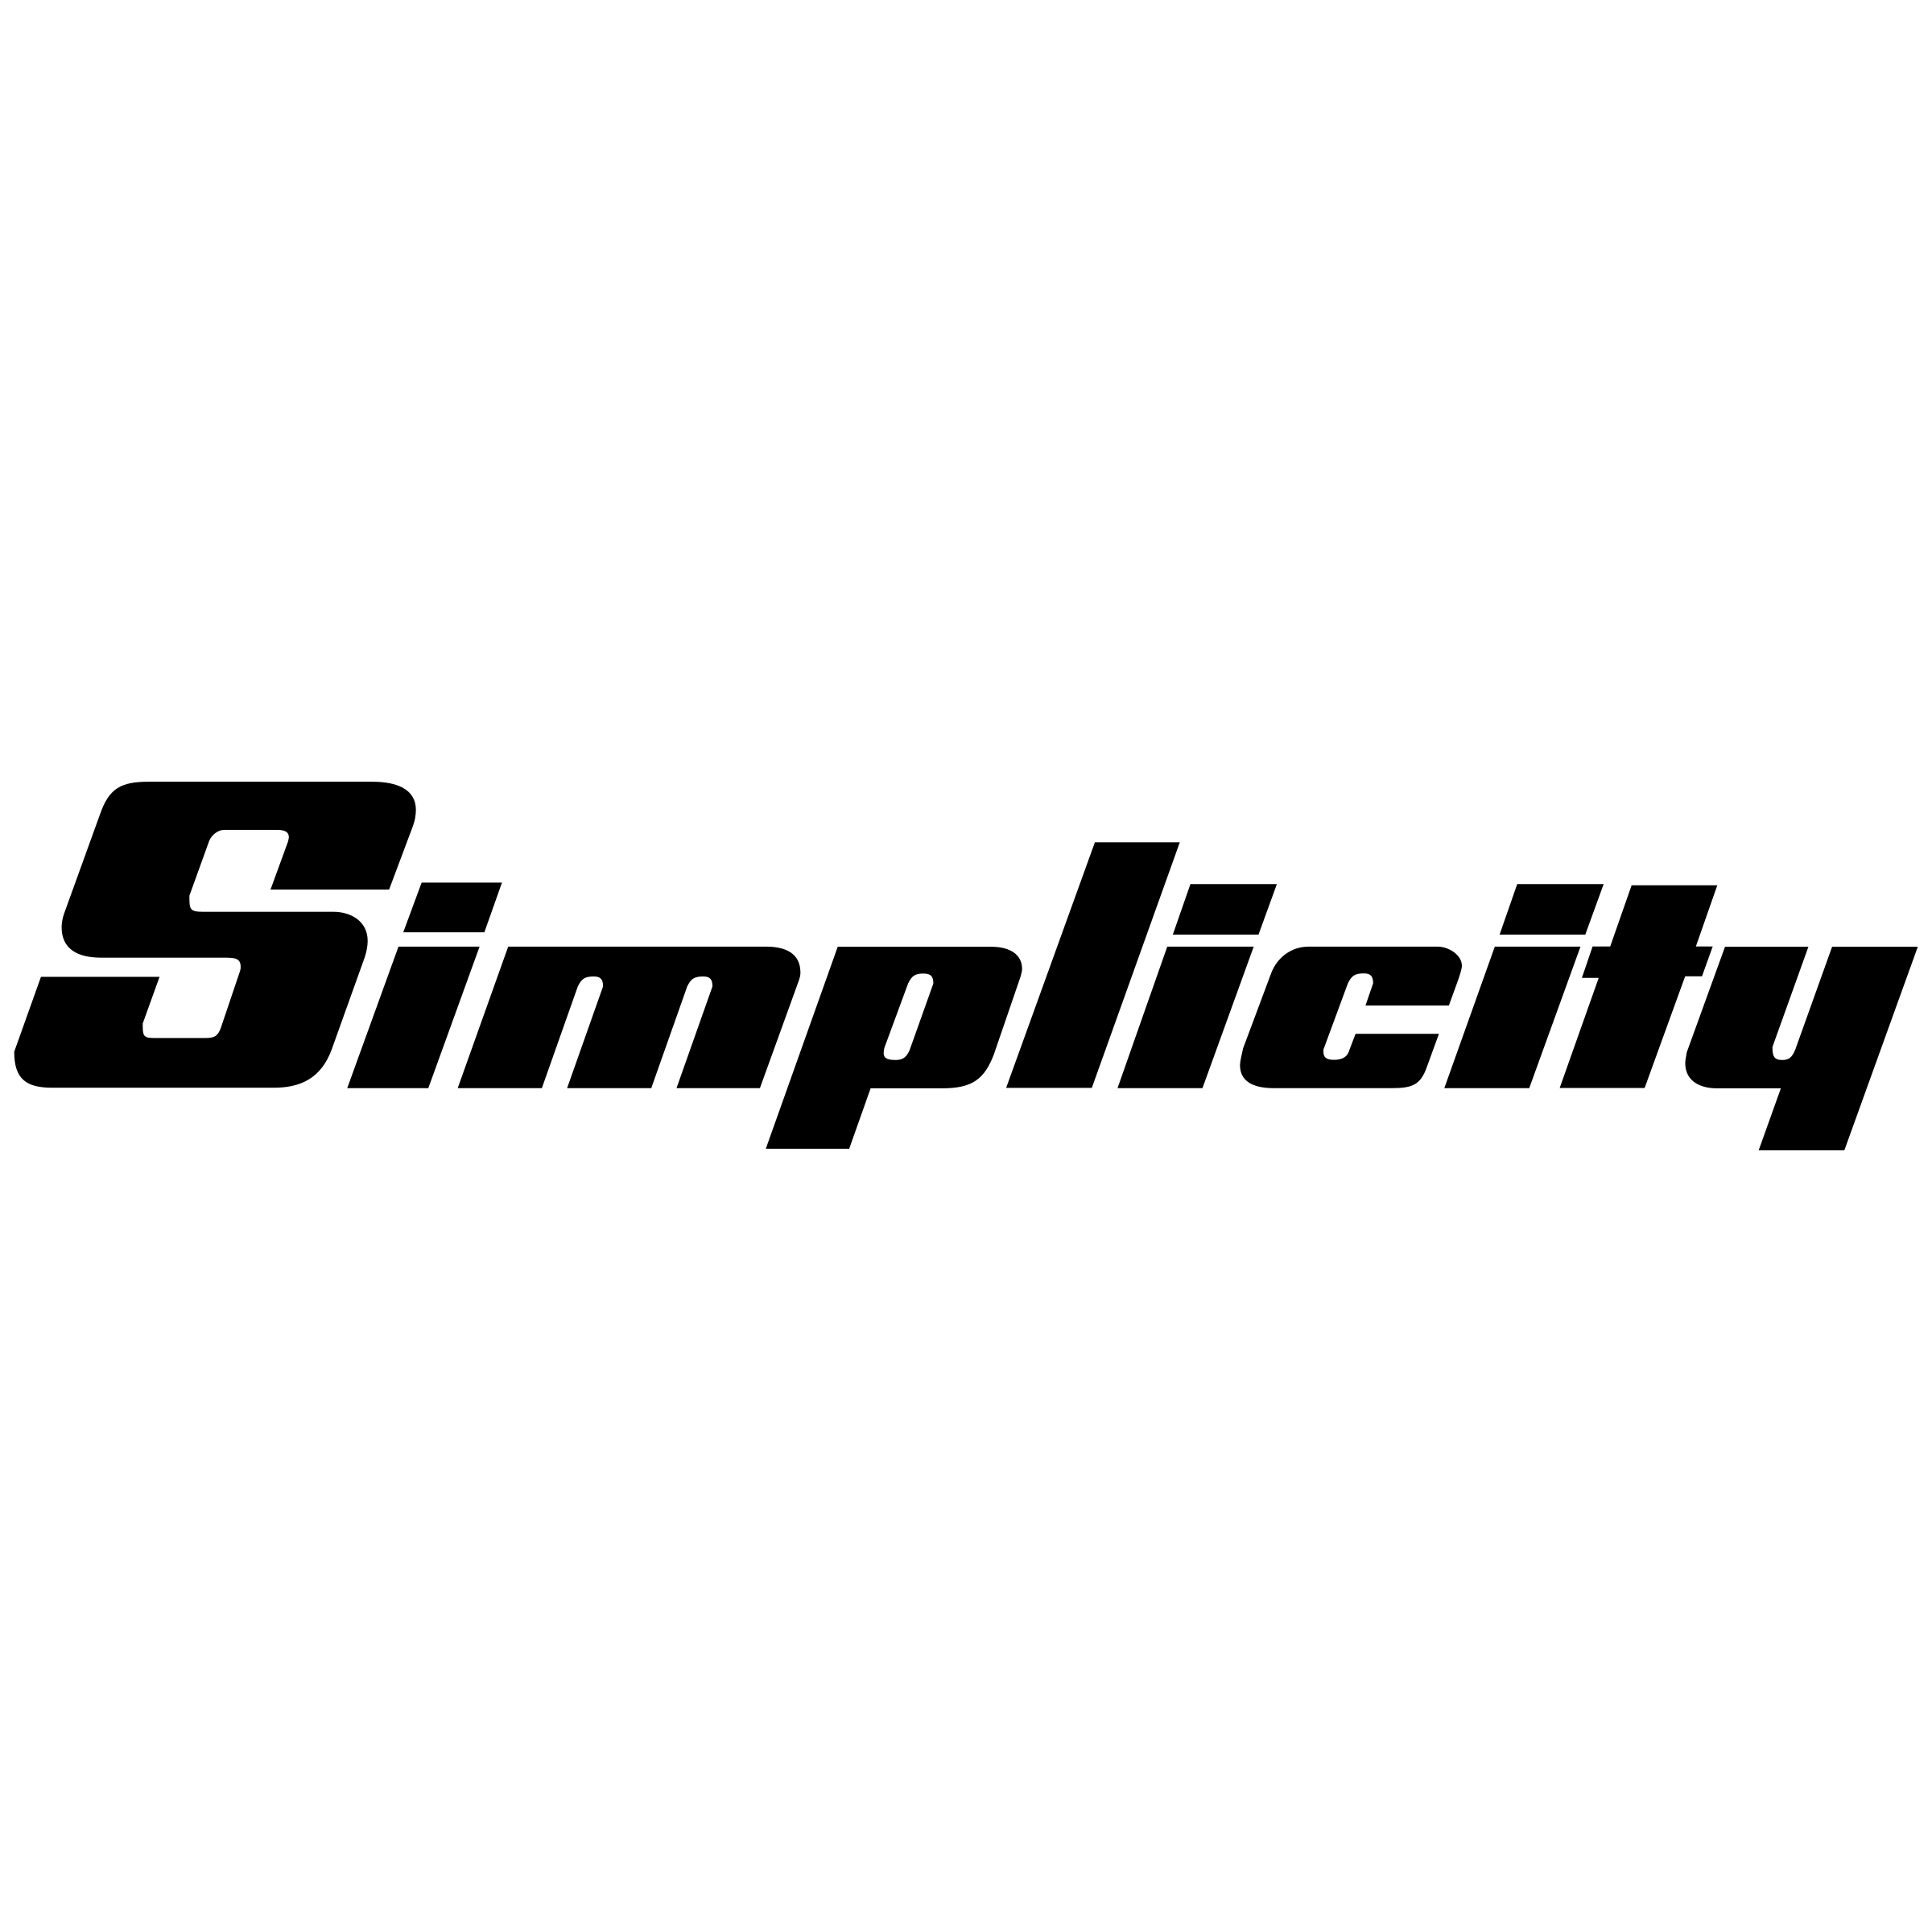 Simplicity Logo - Simplicity Logo PNG Transparent & SVG Vector